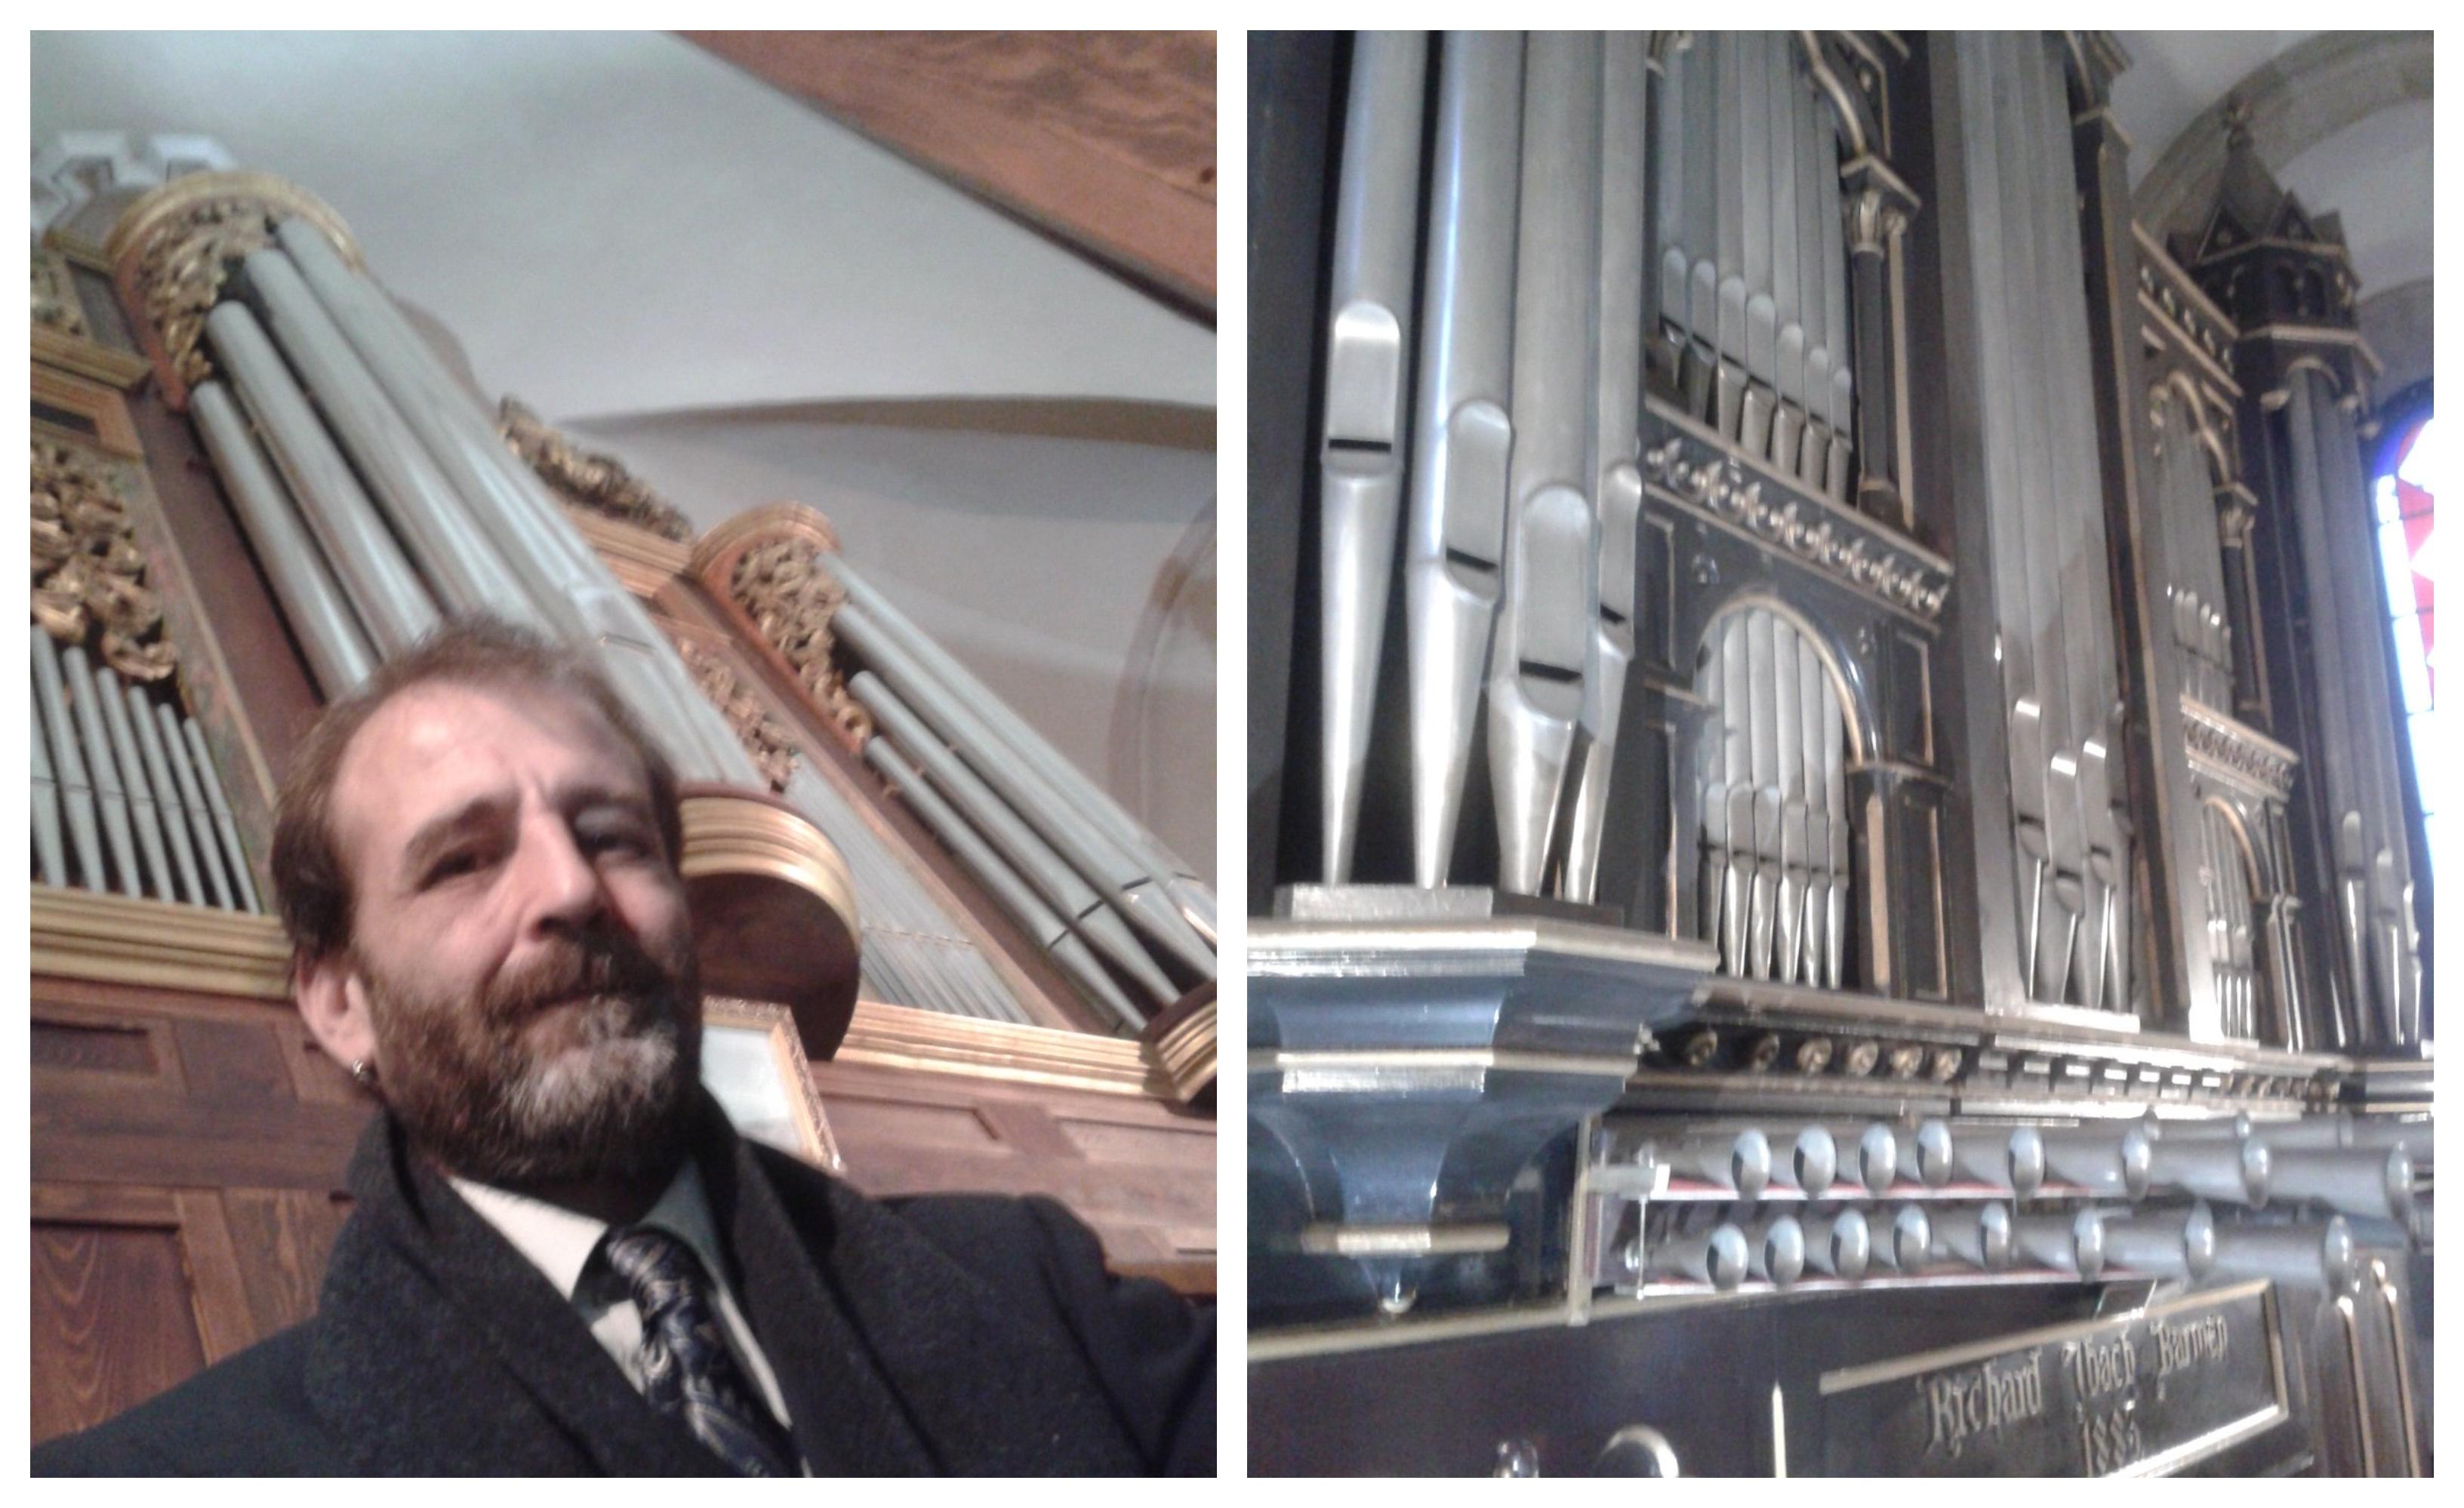 No me hice un selfie en mi vida, este es el único, dice Jorge; a la derecha el órgano de la Iglesia Castrense de A Coruña